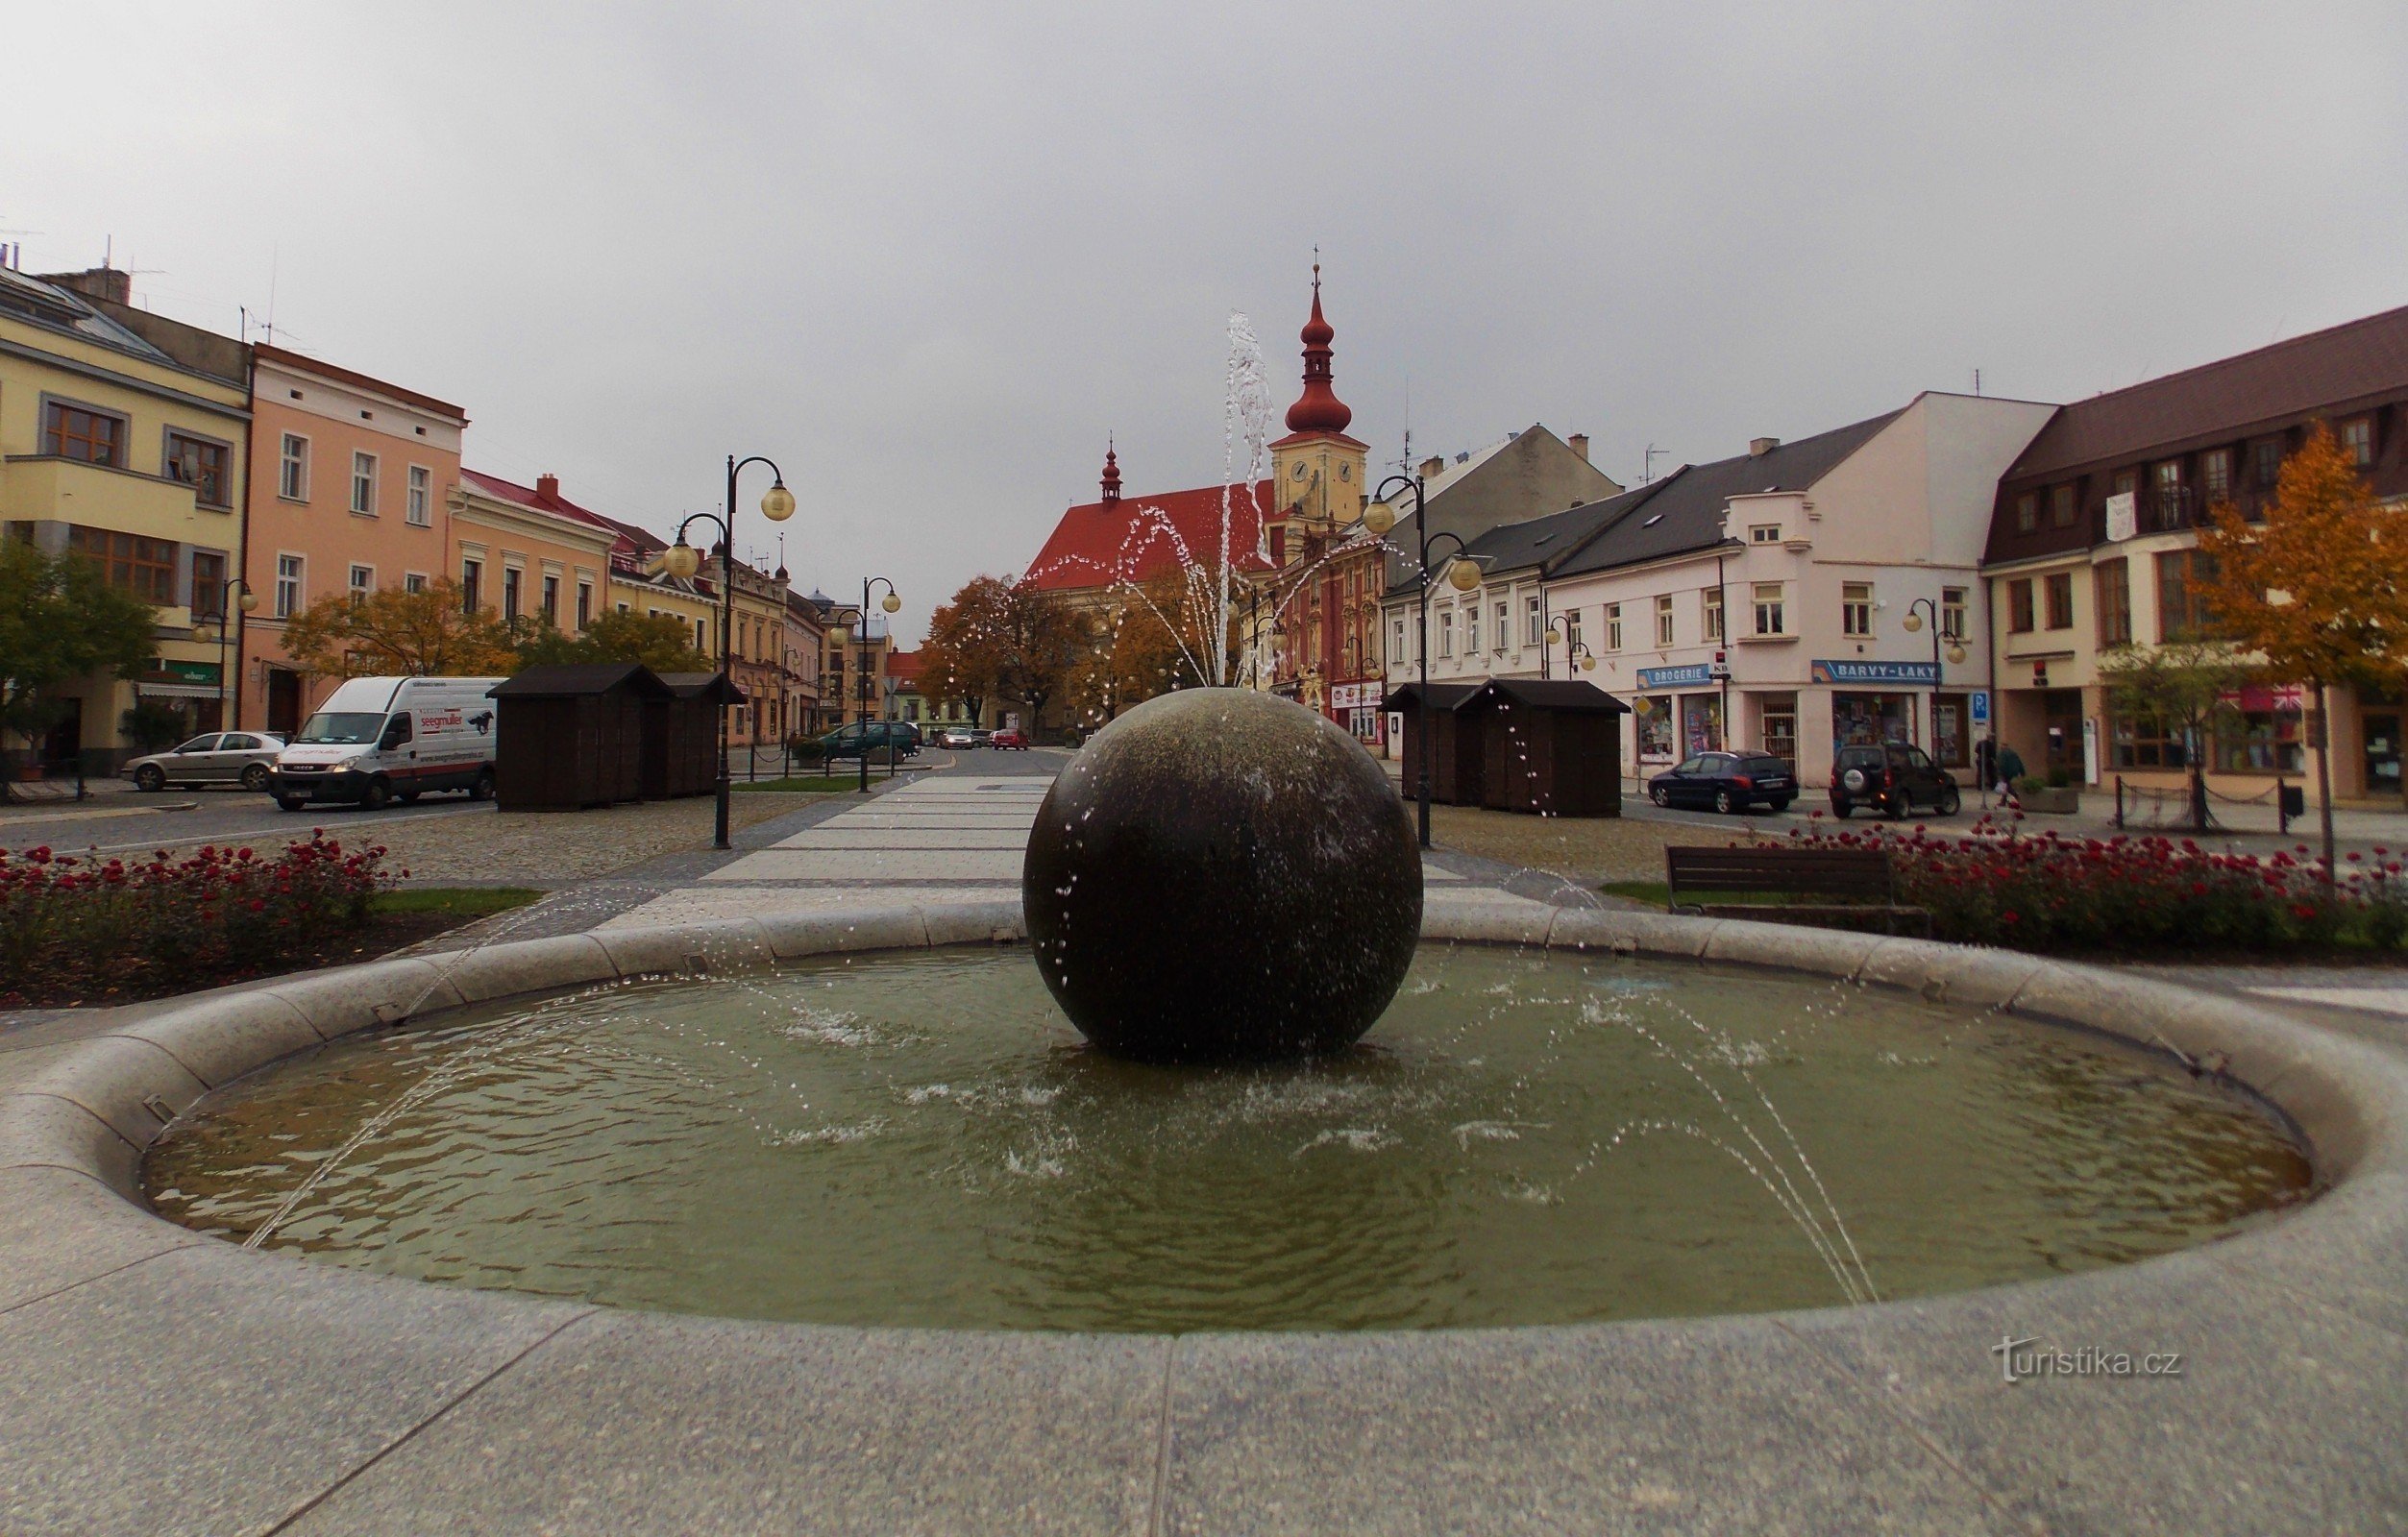 Το κυρίαρχο χαρακτηριστικό του Holešovský náměstí είναι το κυκλικό σιντριβάνι